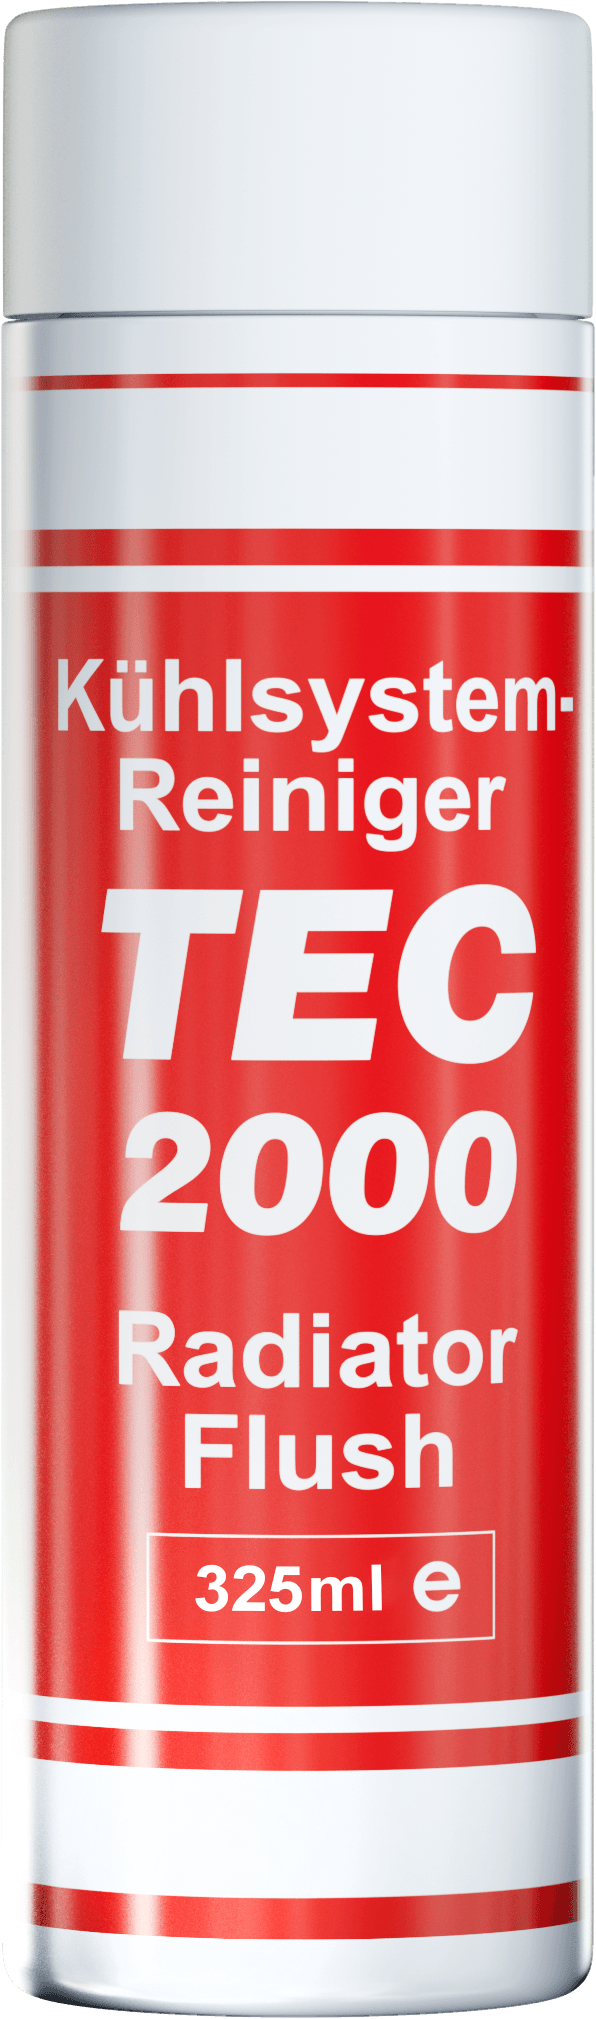 TEC 2000 Radiator Flush product